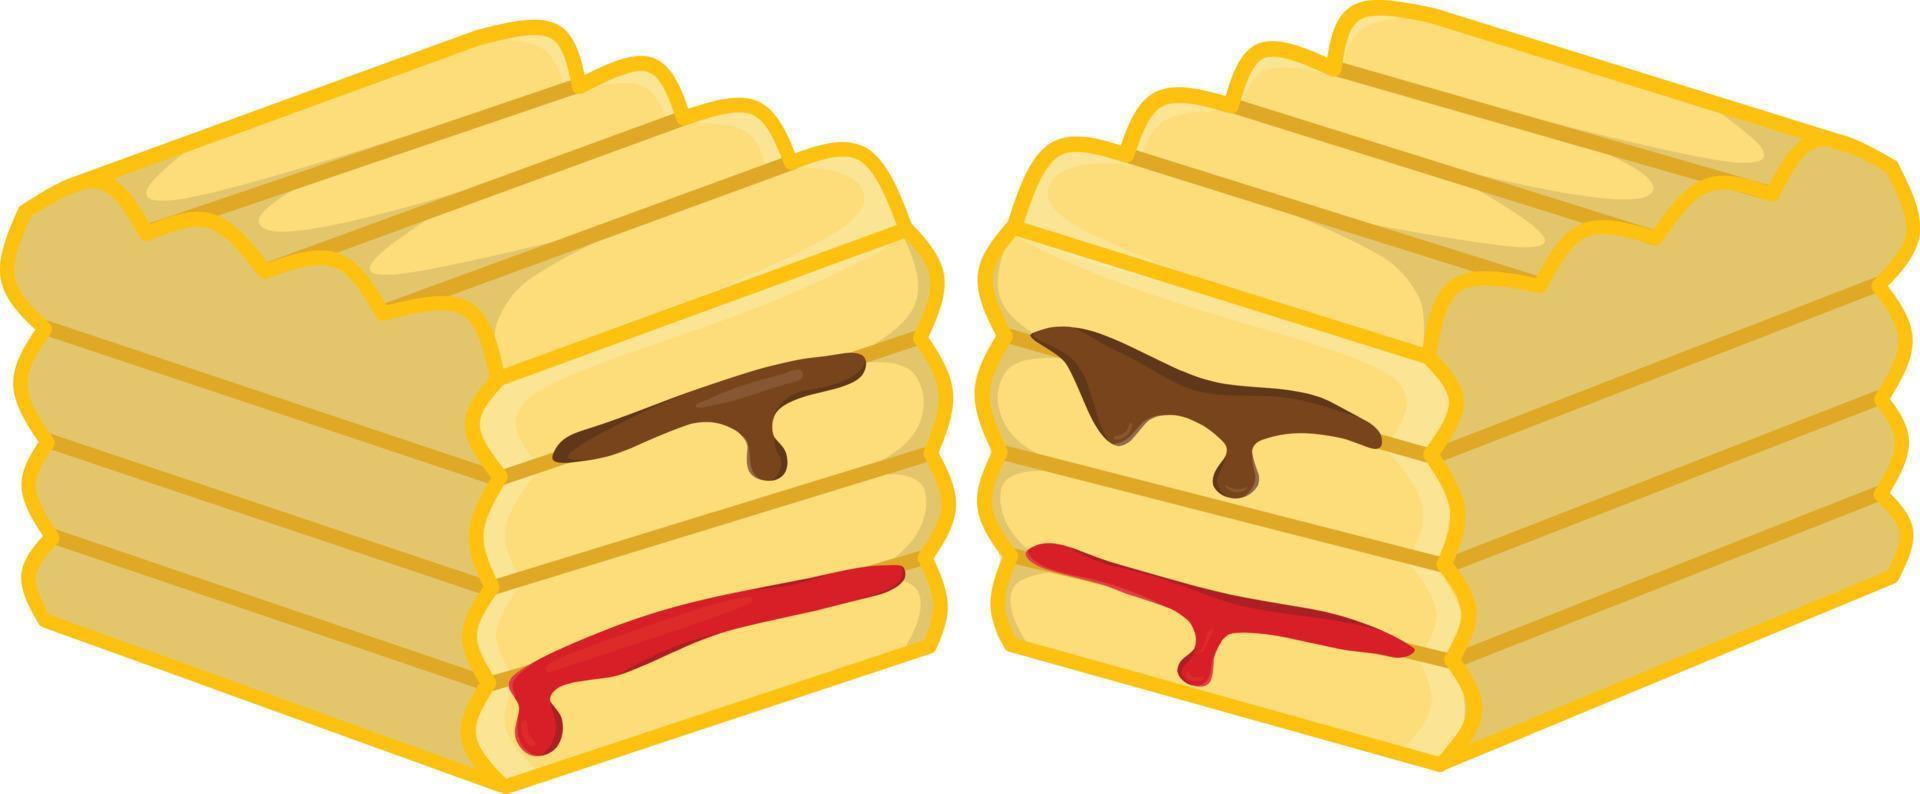 pane tostato con cioccolato e marmellata di fragole, può essere utilizzato per loghi, icone e illustrazioni di cibo, ristoranti e aziende. vettore